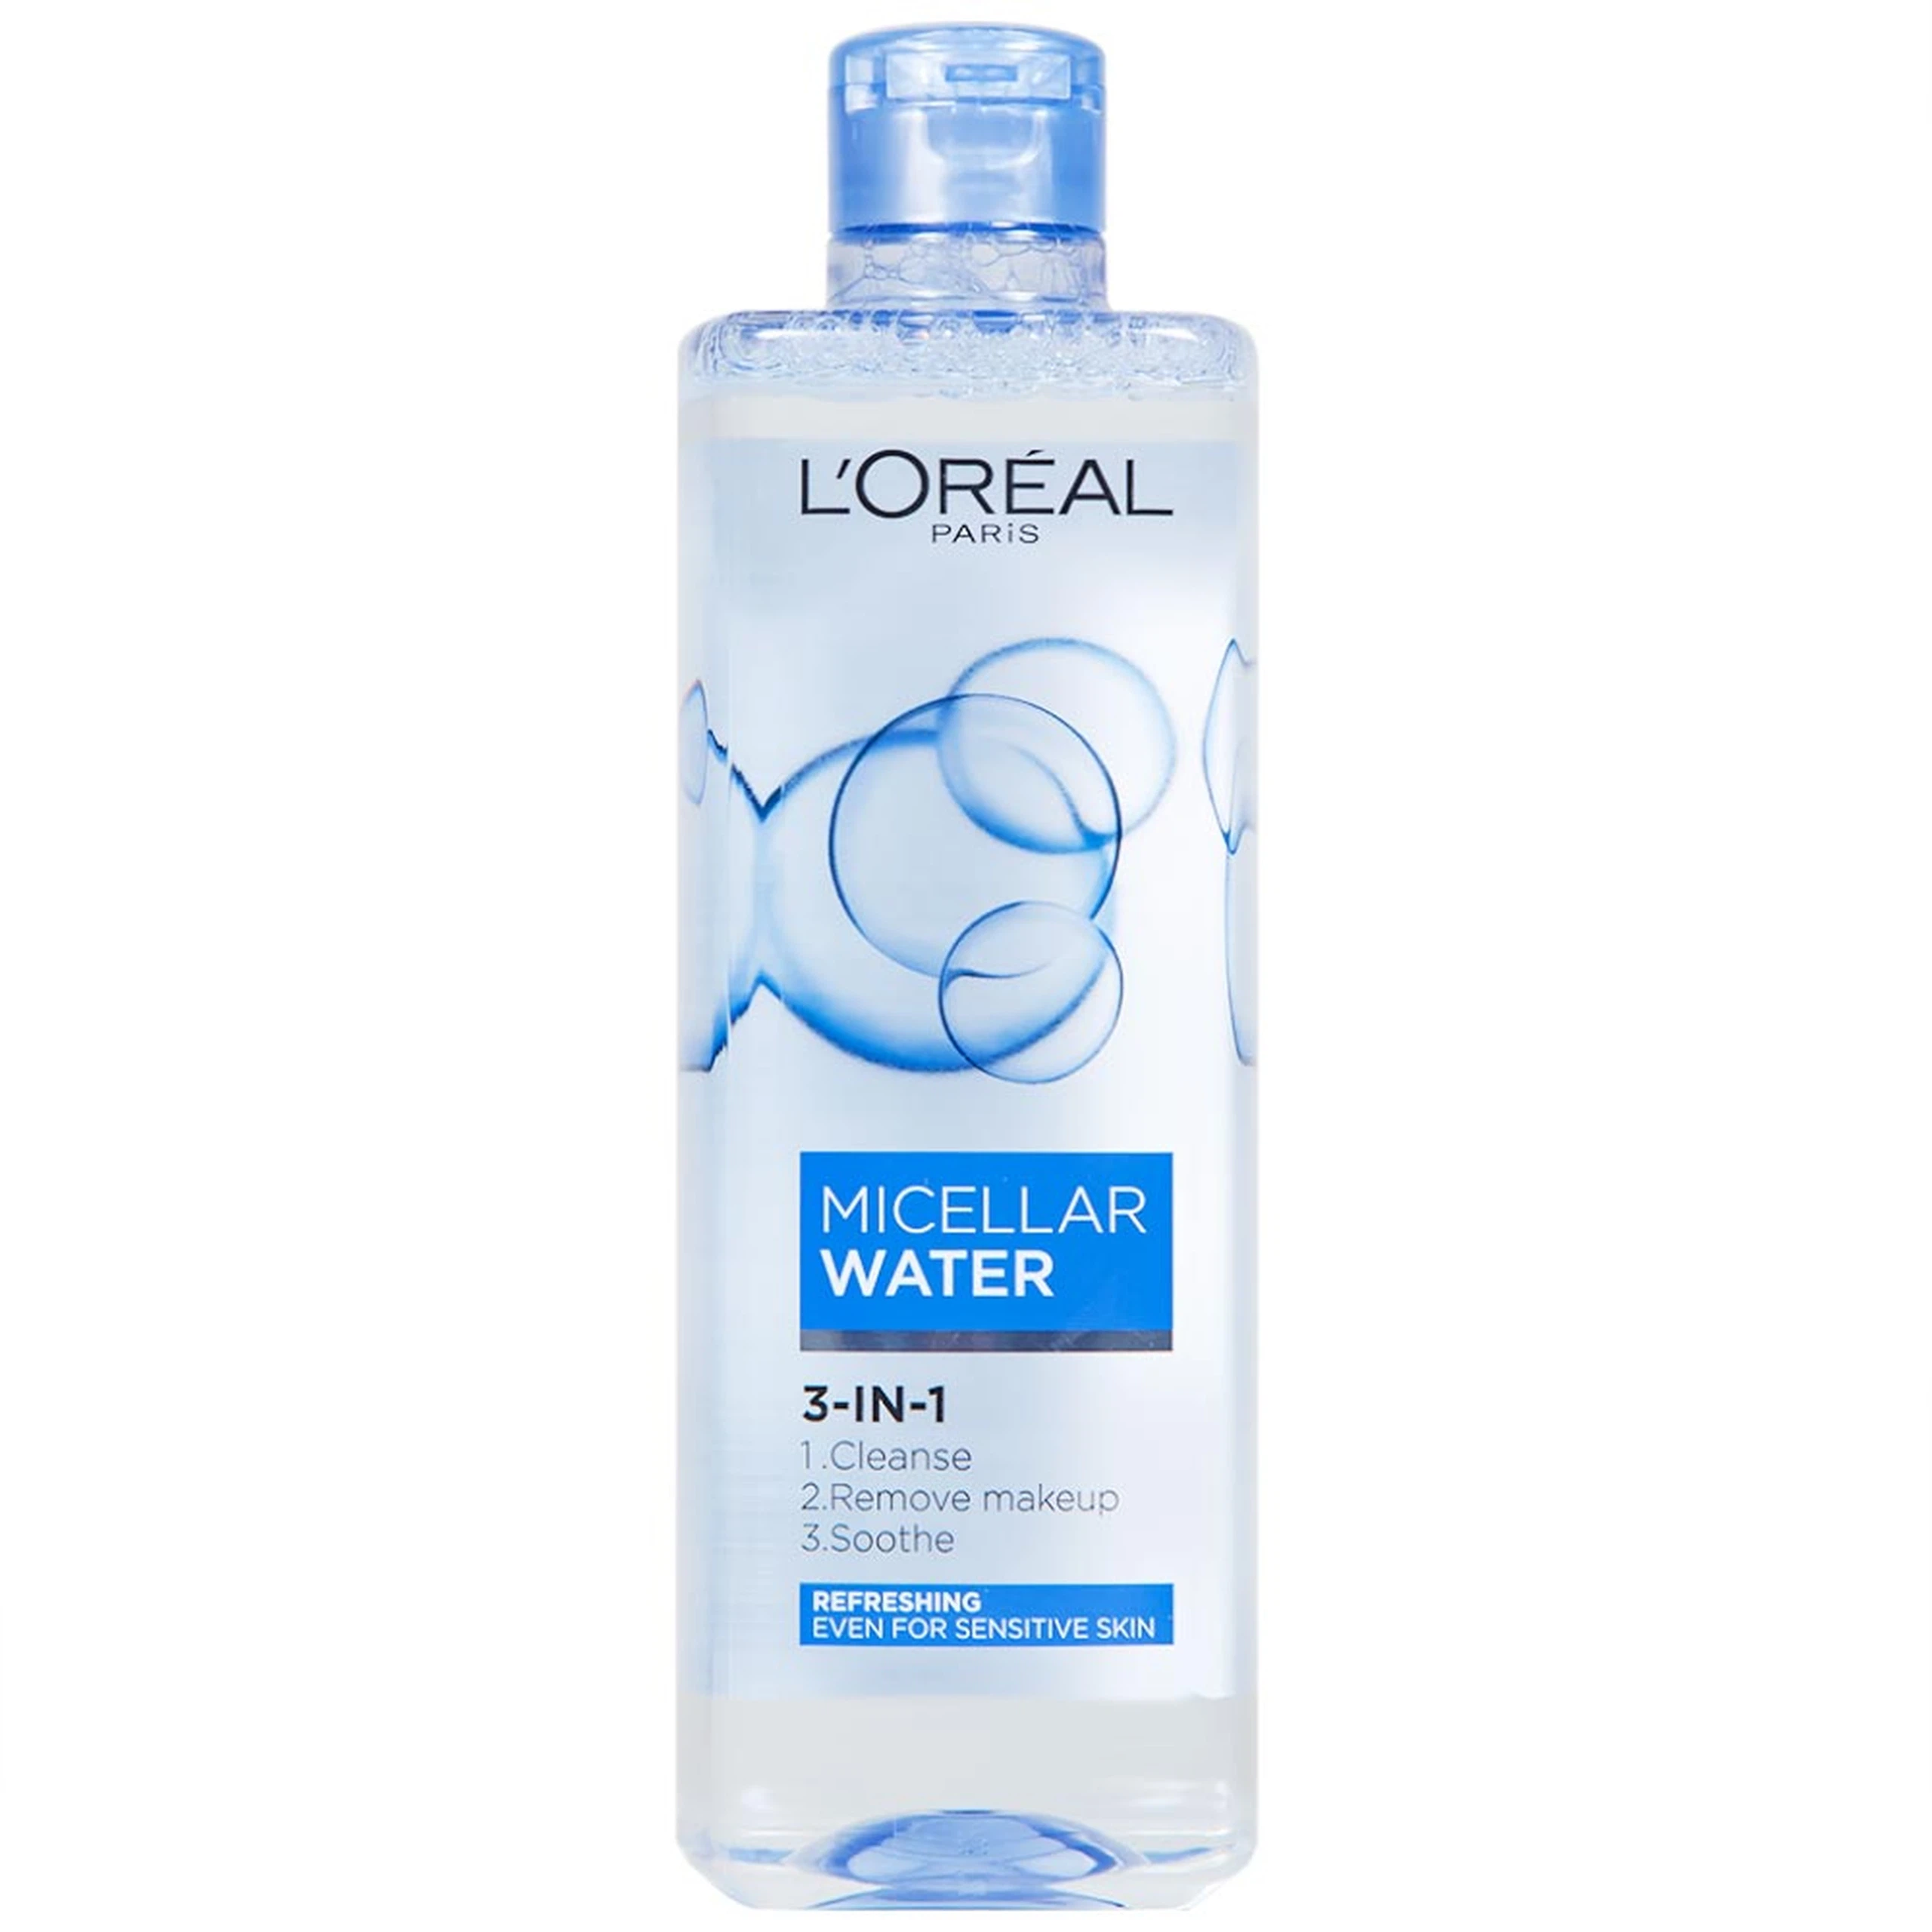 Nước tẩy trang L'Oreal Micellar Water 3-in-1 Refreshing dành cho da nhạy cảm (400ml)